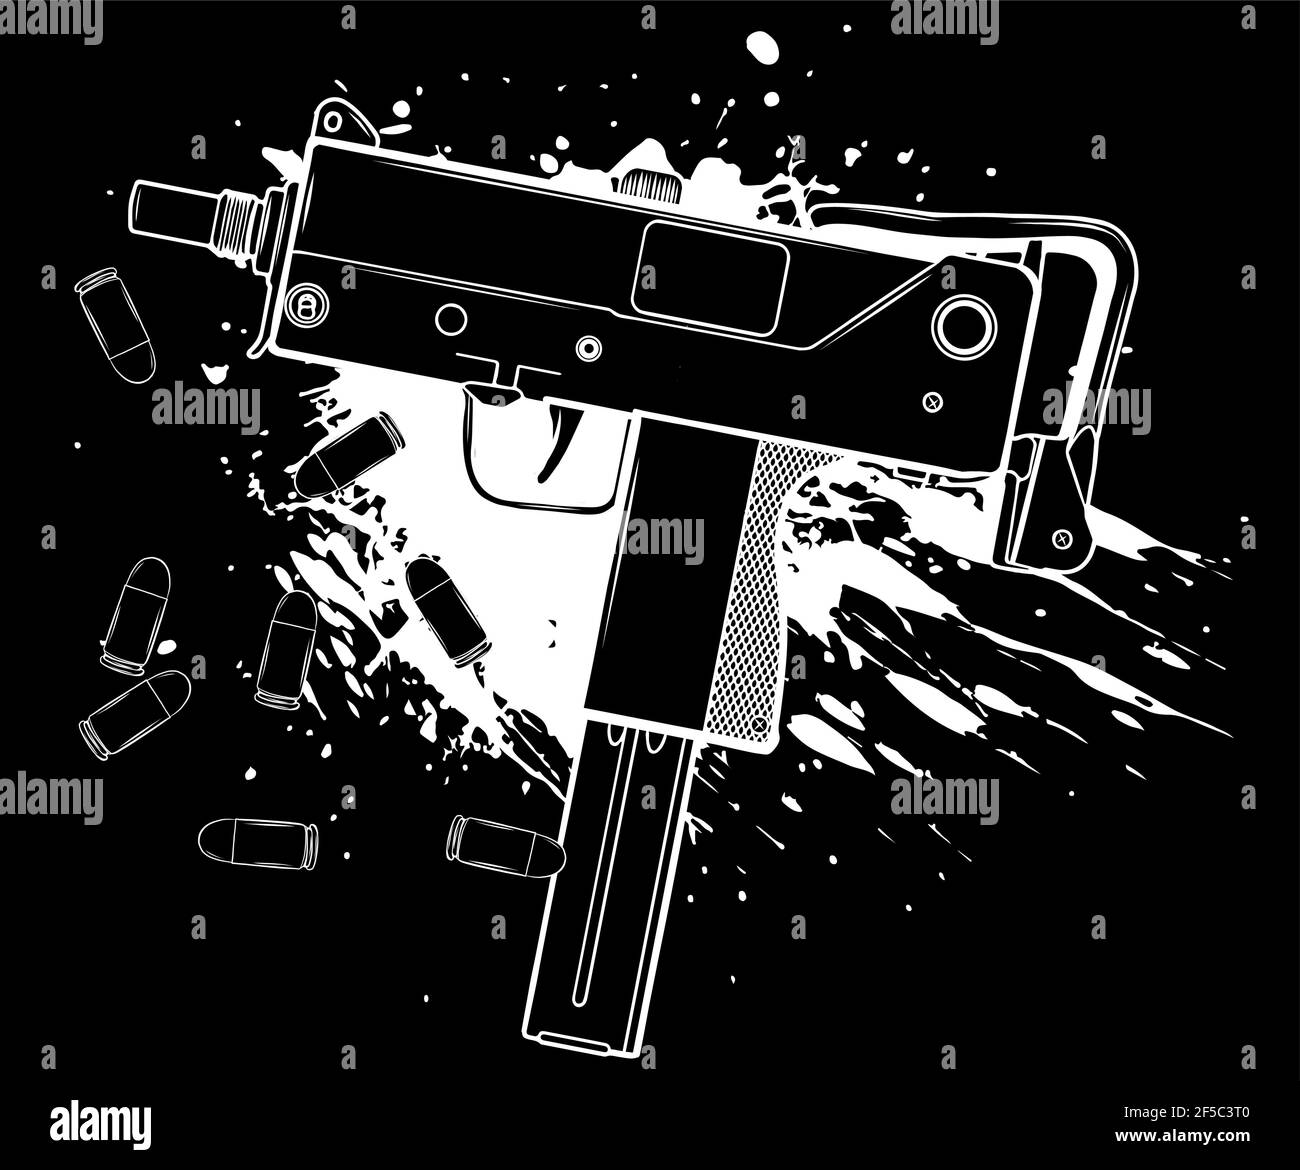 silhouette blanche de l'arme uzi armée avec des balles et du sang Illustration de Vecteur